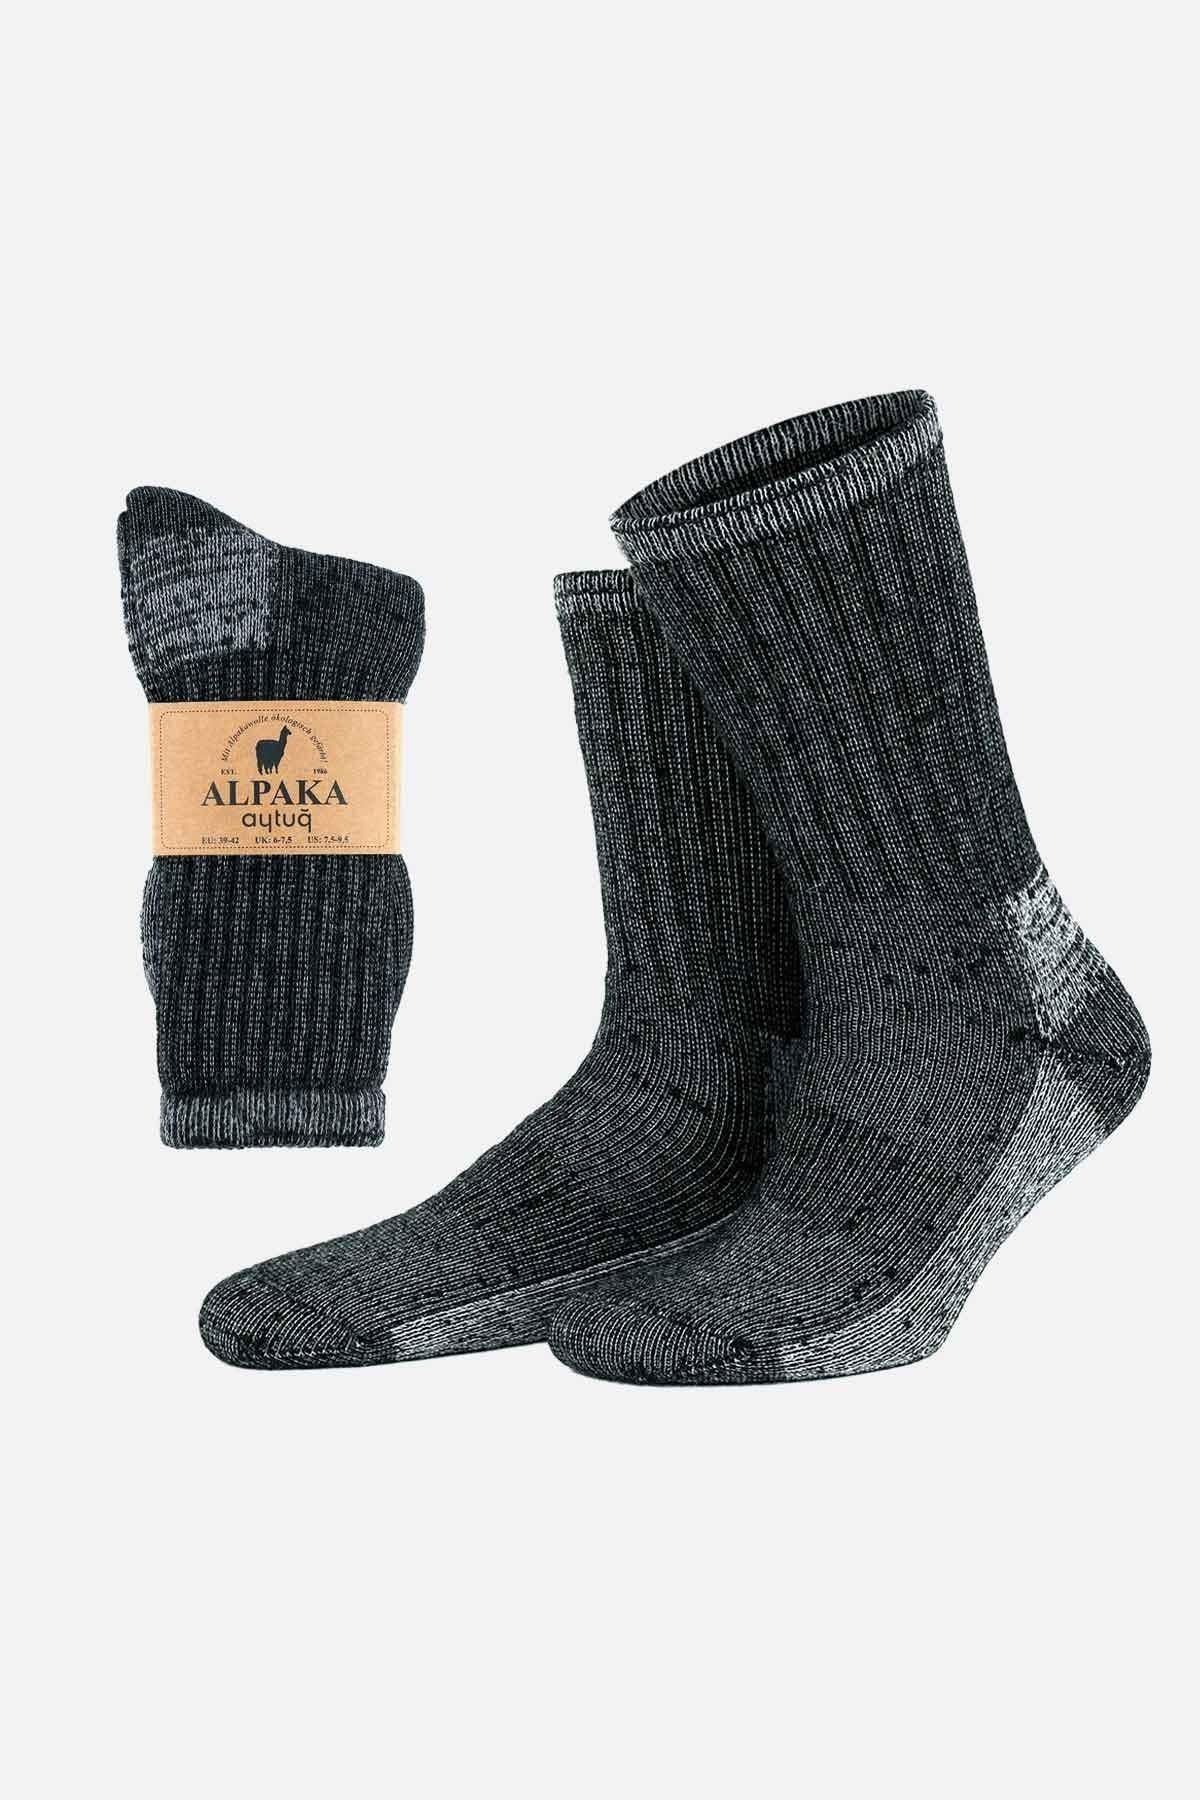 Aytuğ Unisex Alpaka Yünü Havlu Kışlık Antrasit/ekru Soket Çorap - A-6006